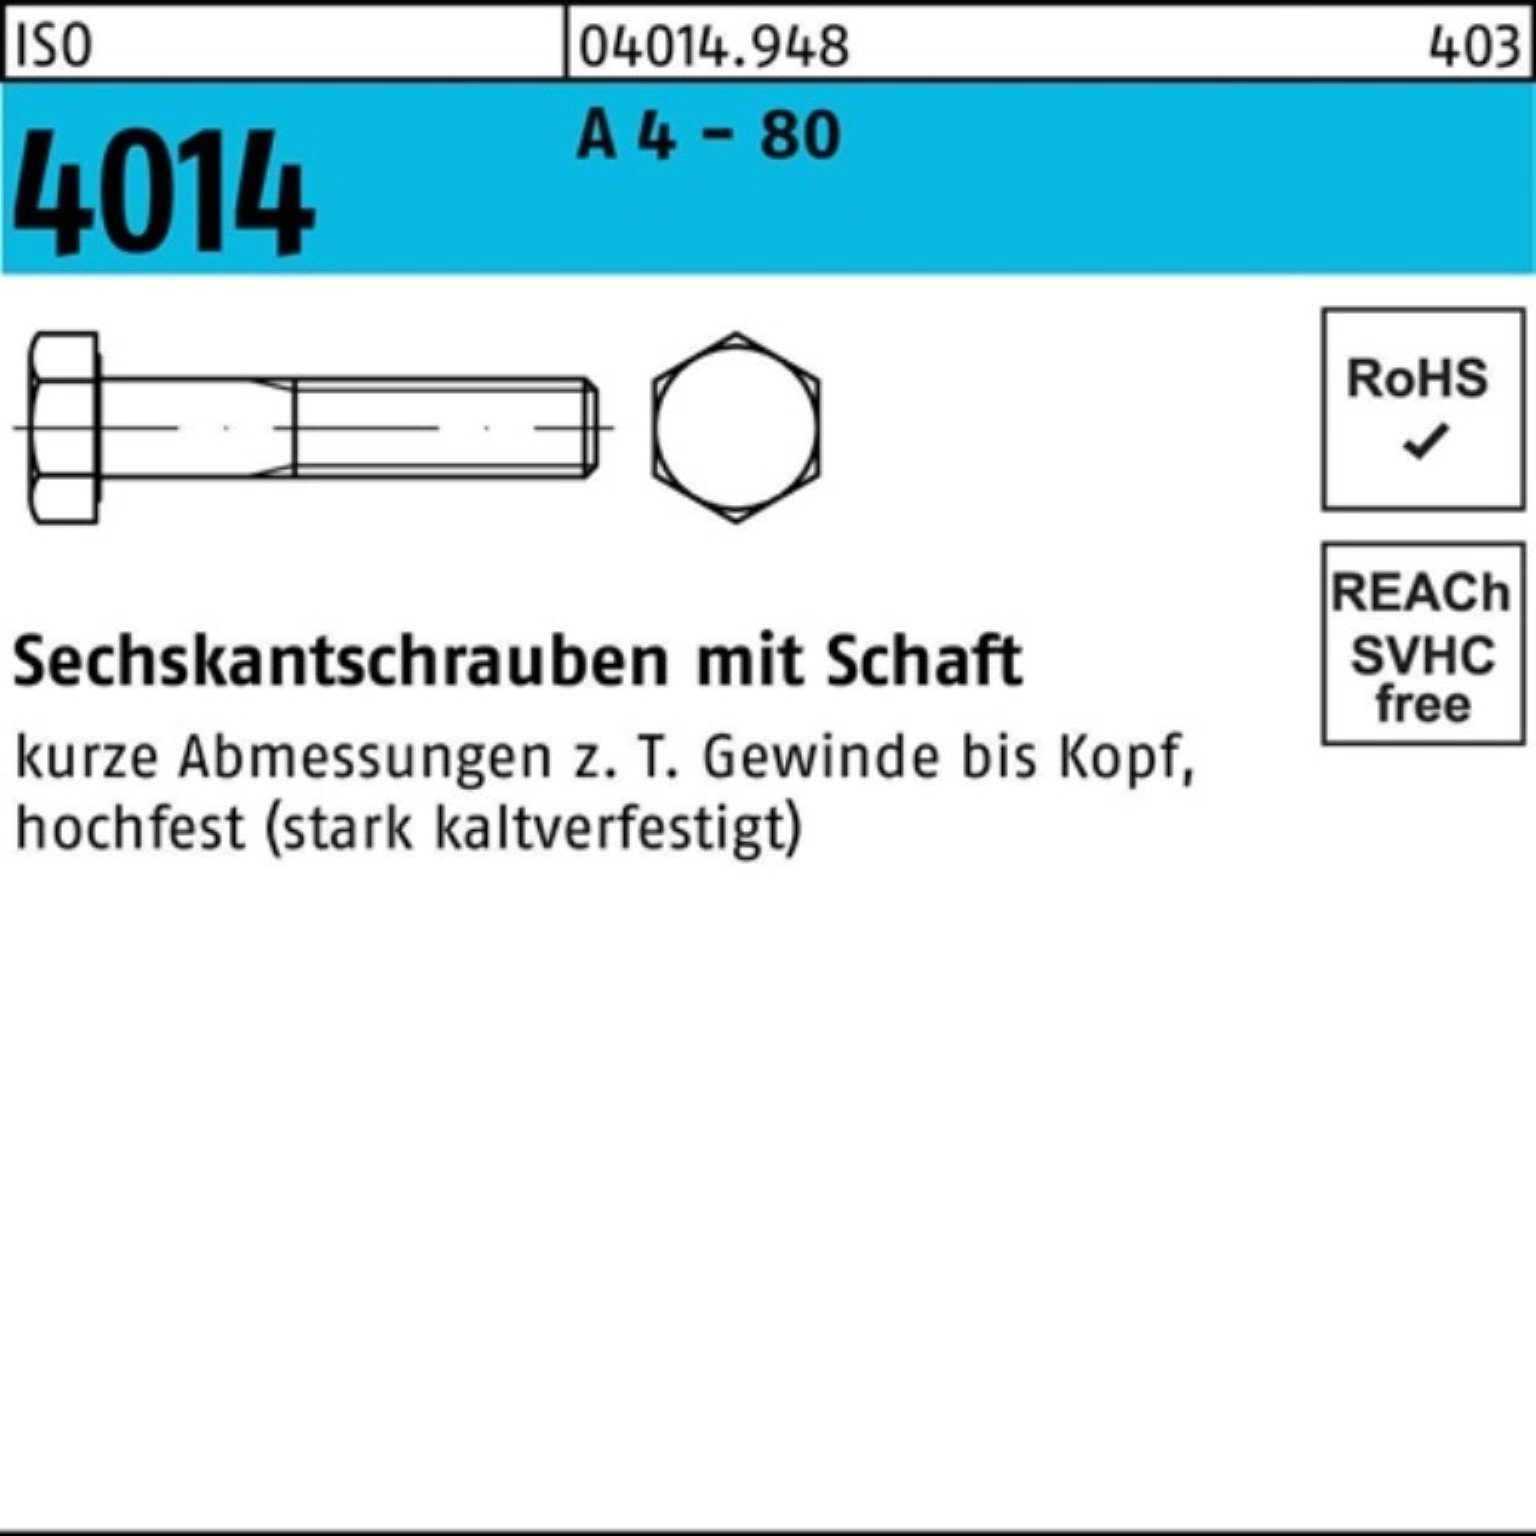 Reyher Sechskantschraube 100er Pack 190 80 A Sechskantschraube 4 Stüc ISO - M10x Schaft 4014 1